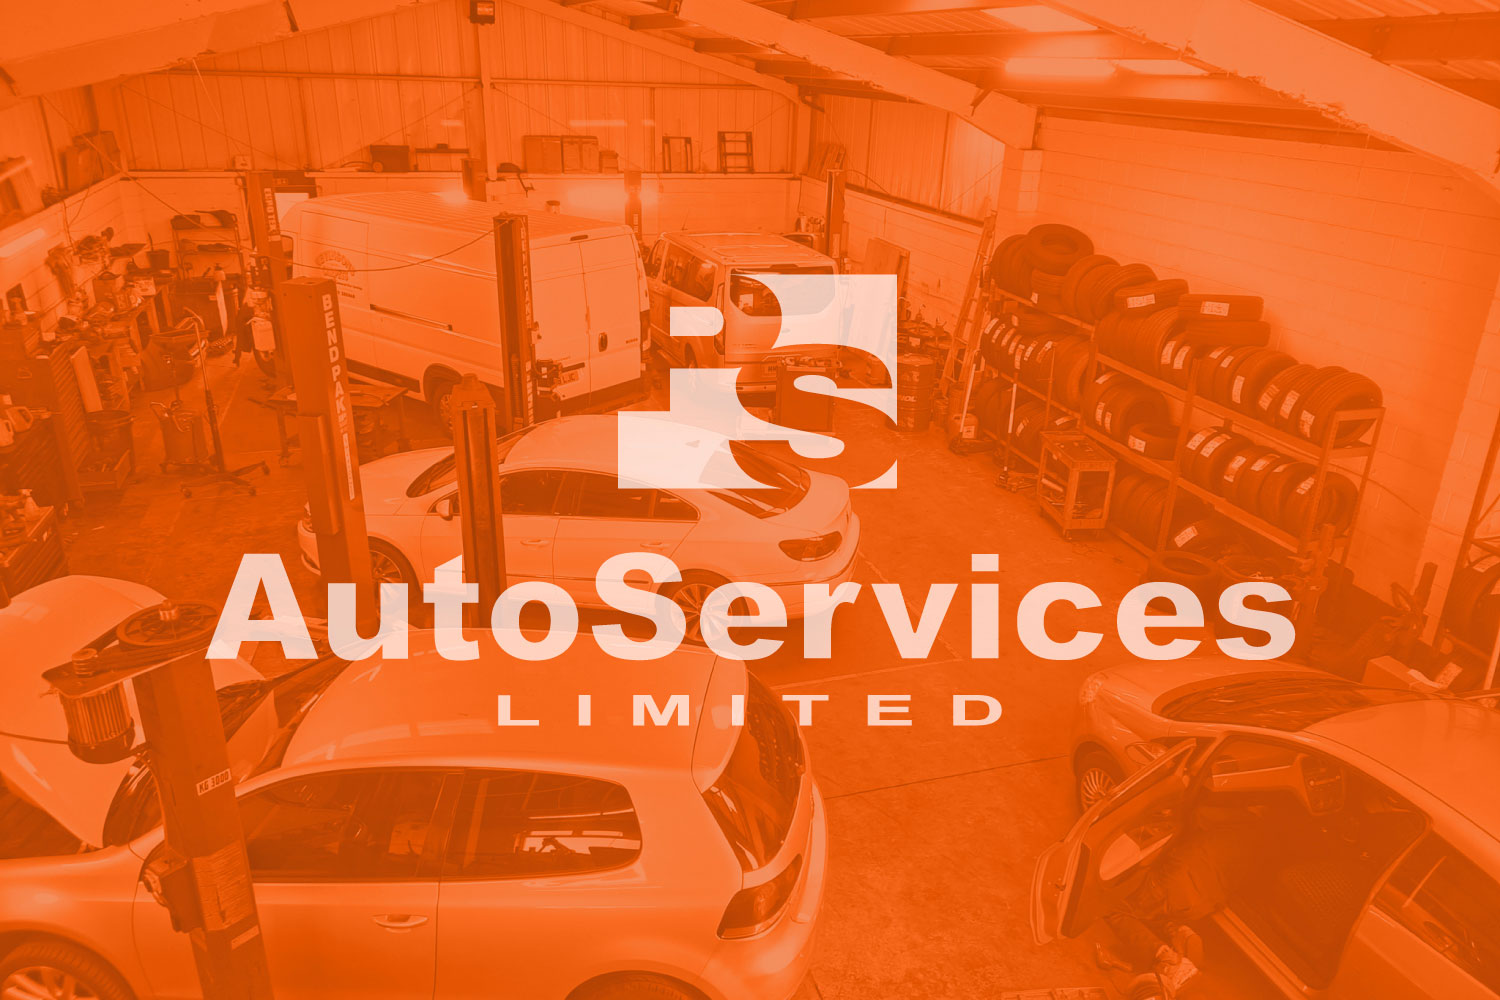 Projekt logo PS auto services